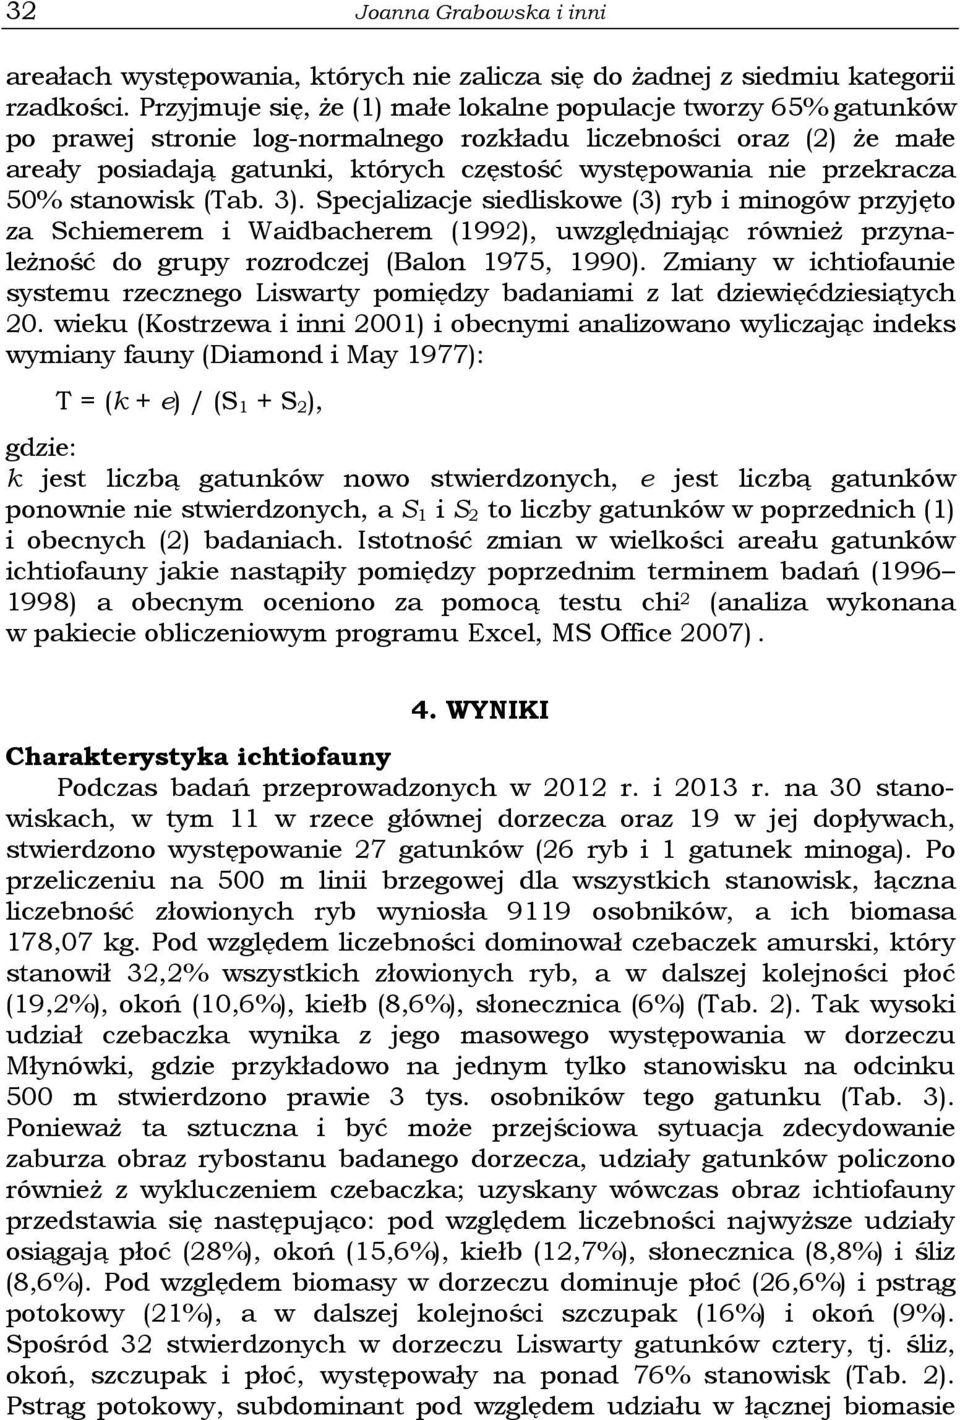 przekracza 50% stanowisk (Tab. 3). Specjalizacje siedliskowe (3) ryb i minogów przyjęto za Schiemerem i Waidbacherem (1992), uwzględniając również przynależność do grupy rozrodczej (Balon 1975, 1990).